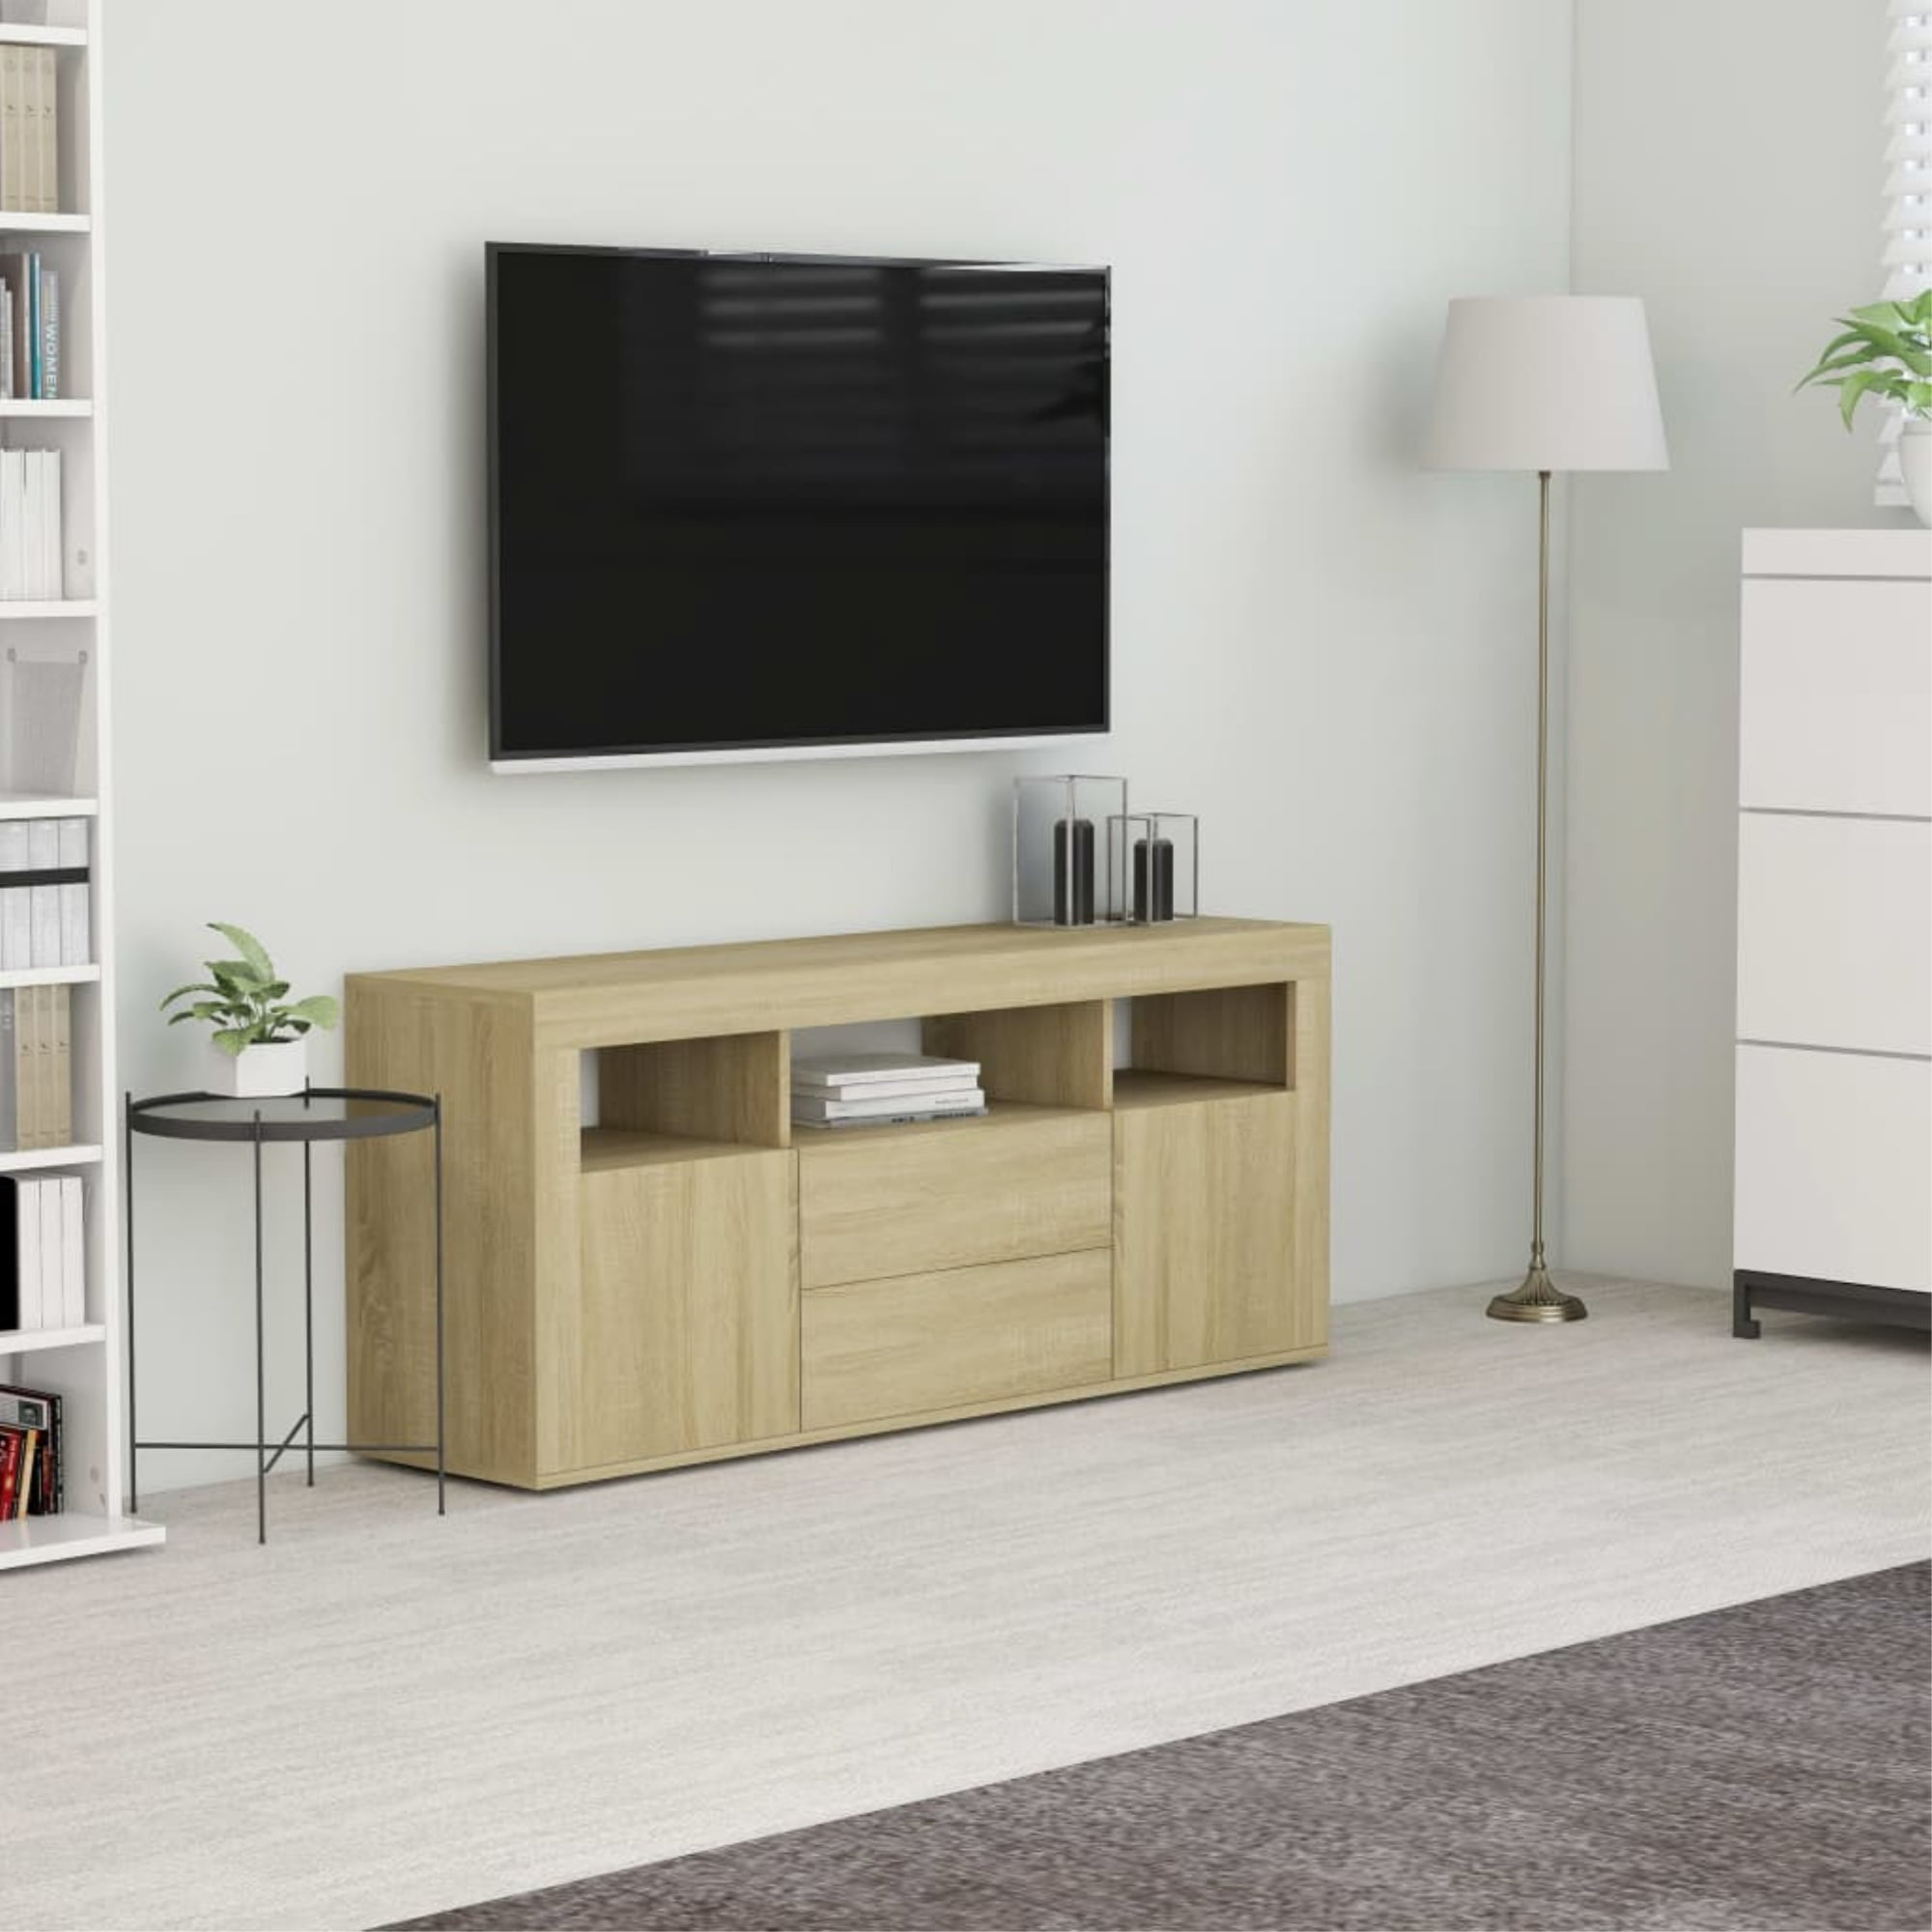 vidaXL 2x Kitchen Cabinets Home Kitchen Equipment Indoor Furniture Tool Storage Shelf Organiser Morden Cupboard Sonoma Oak Chipboard